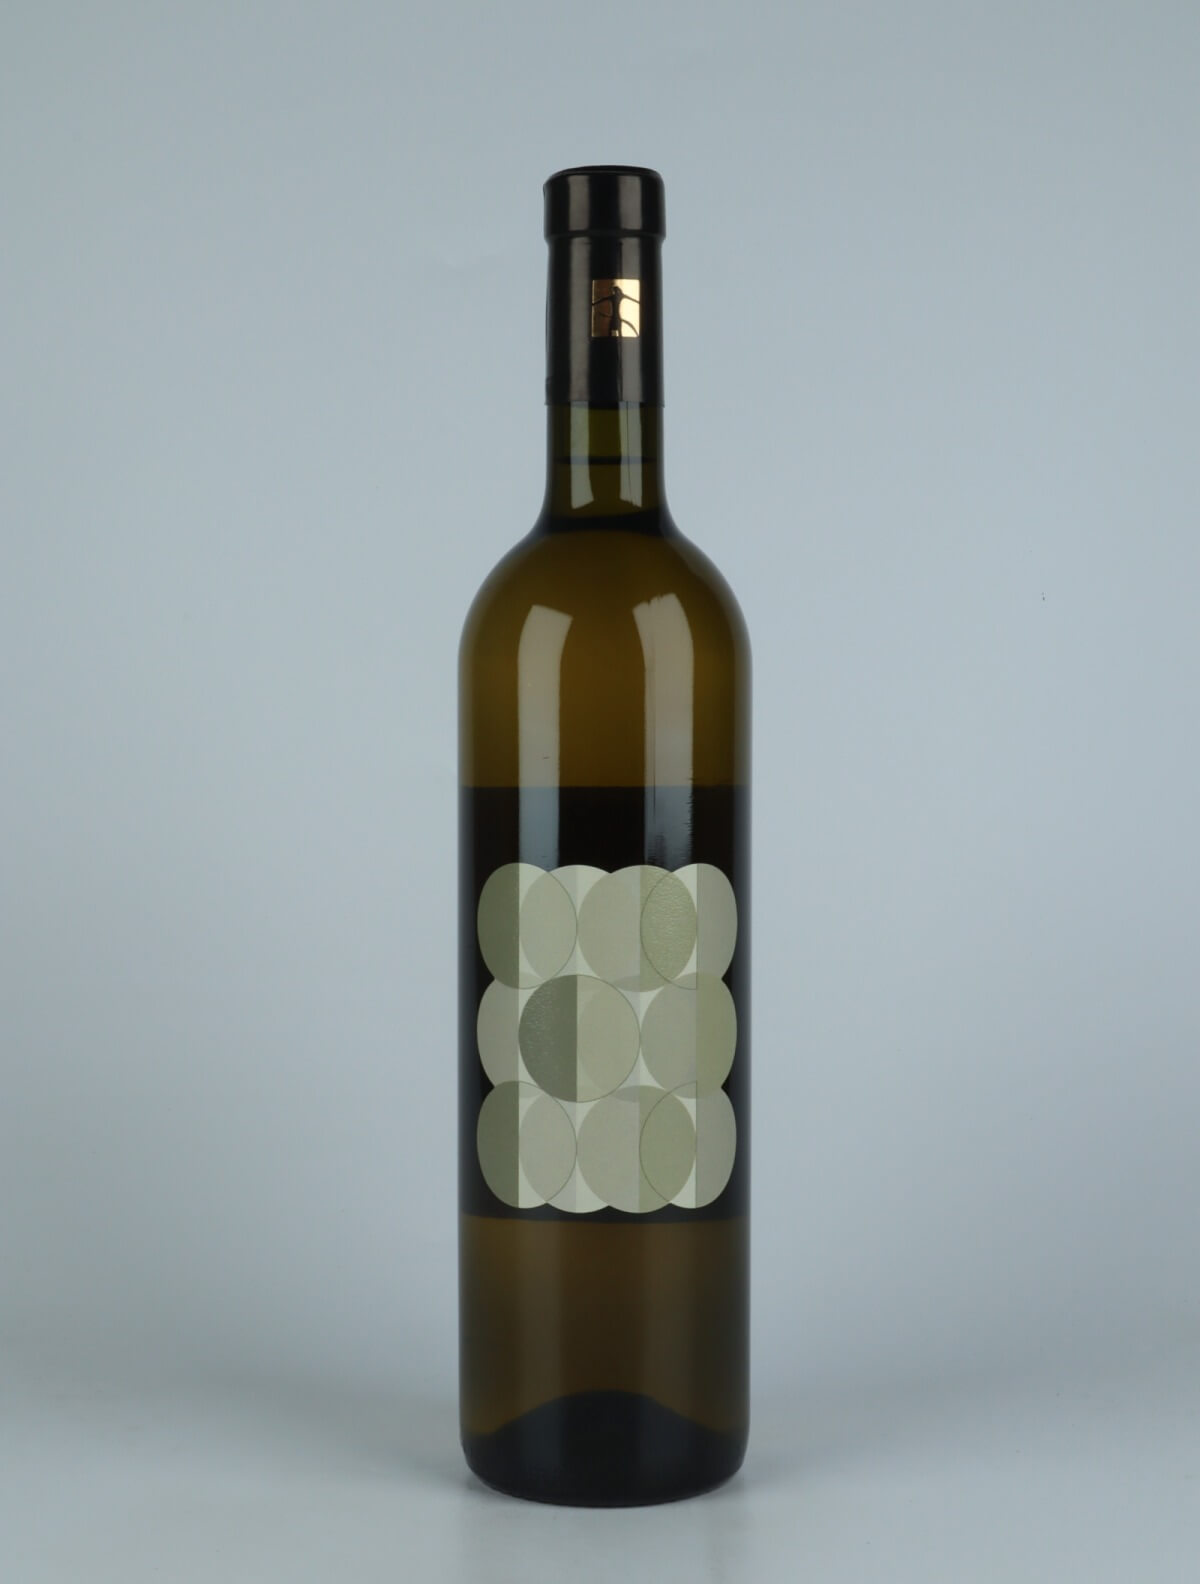 En flaske 2022 Selvadolce Bianco Orange vin fra Tenuta Selvadolce, Ligurien i Italien